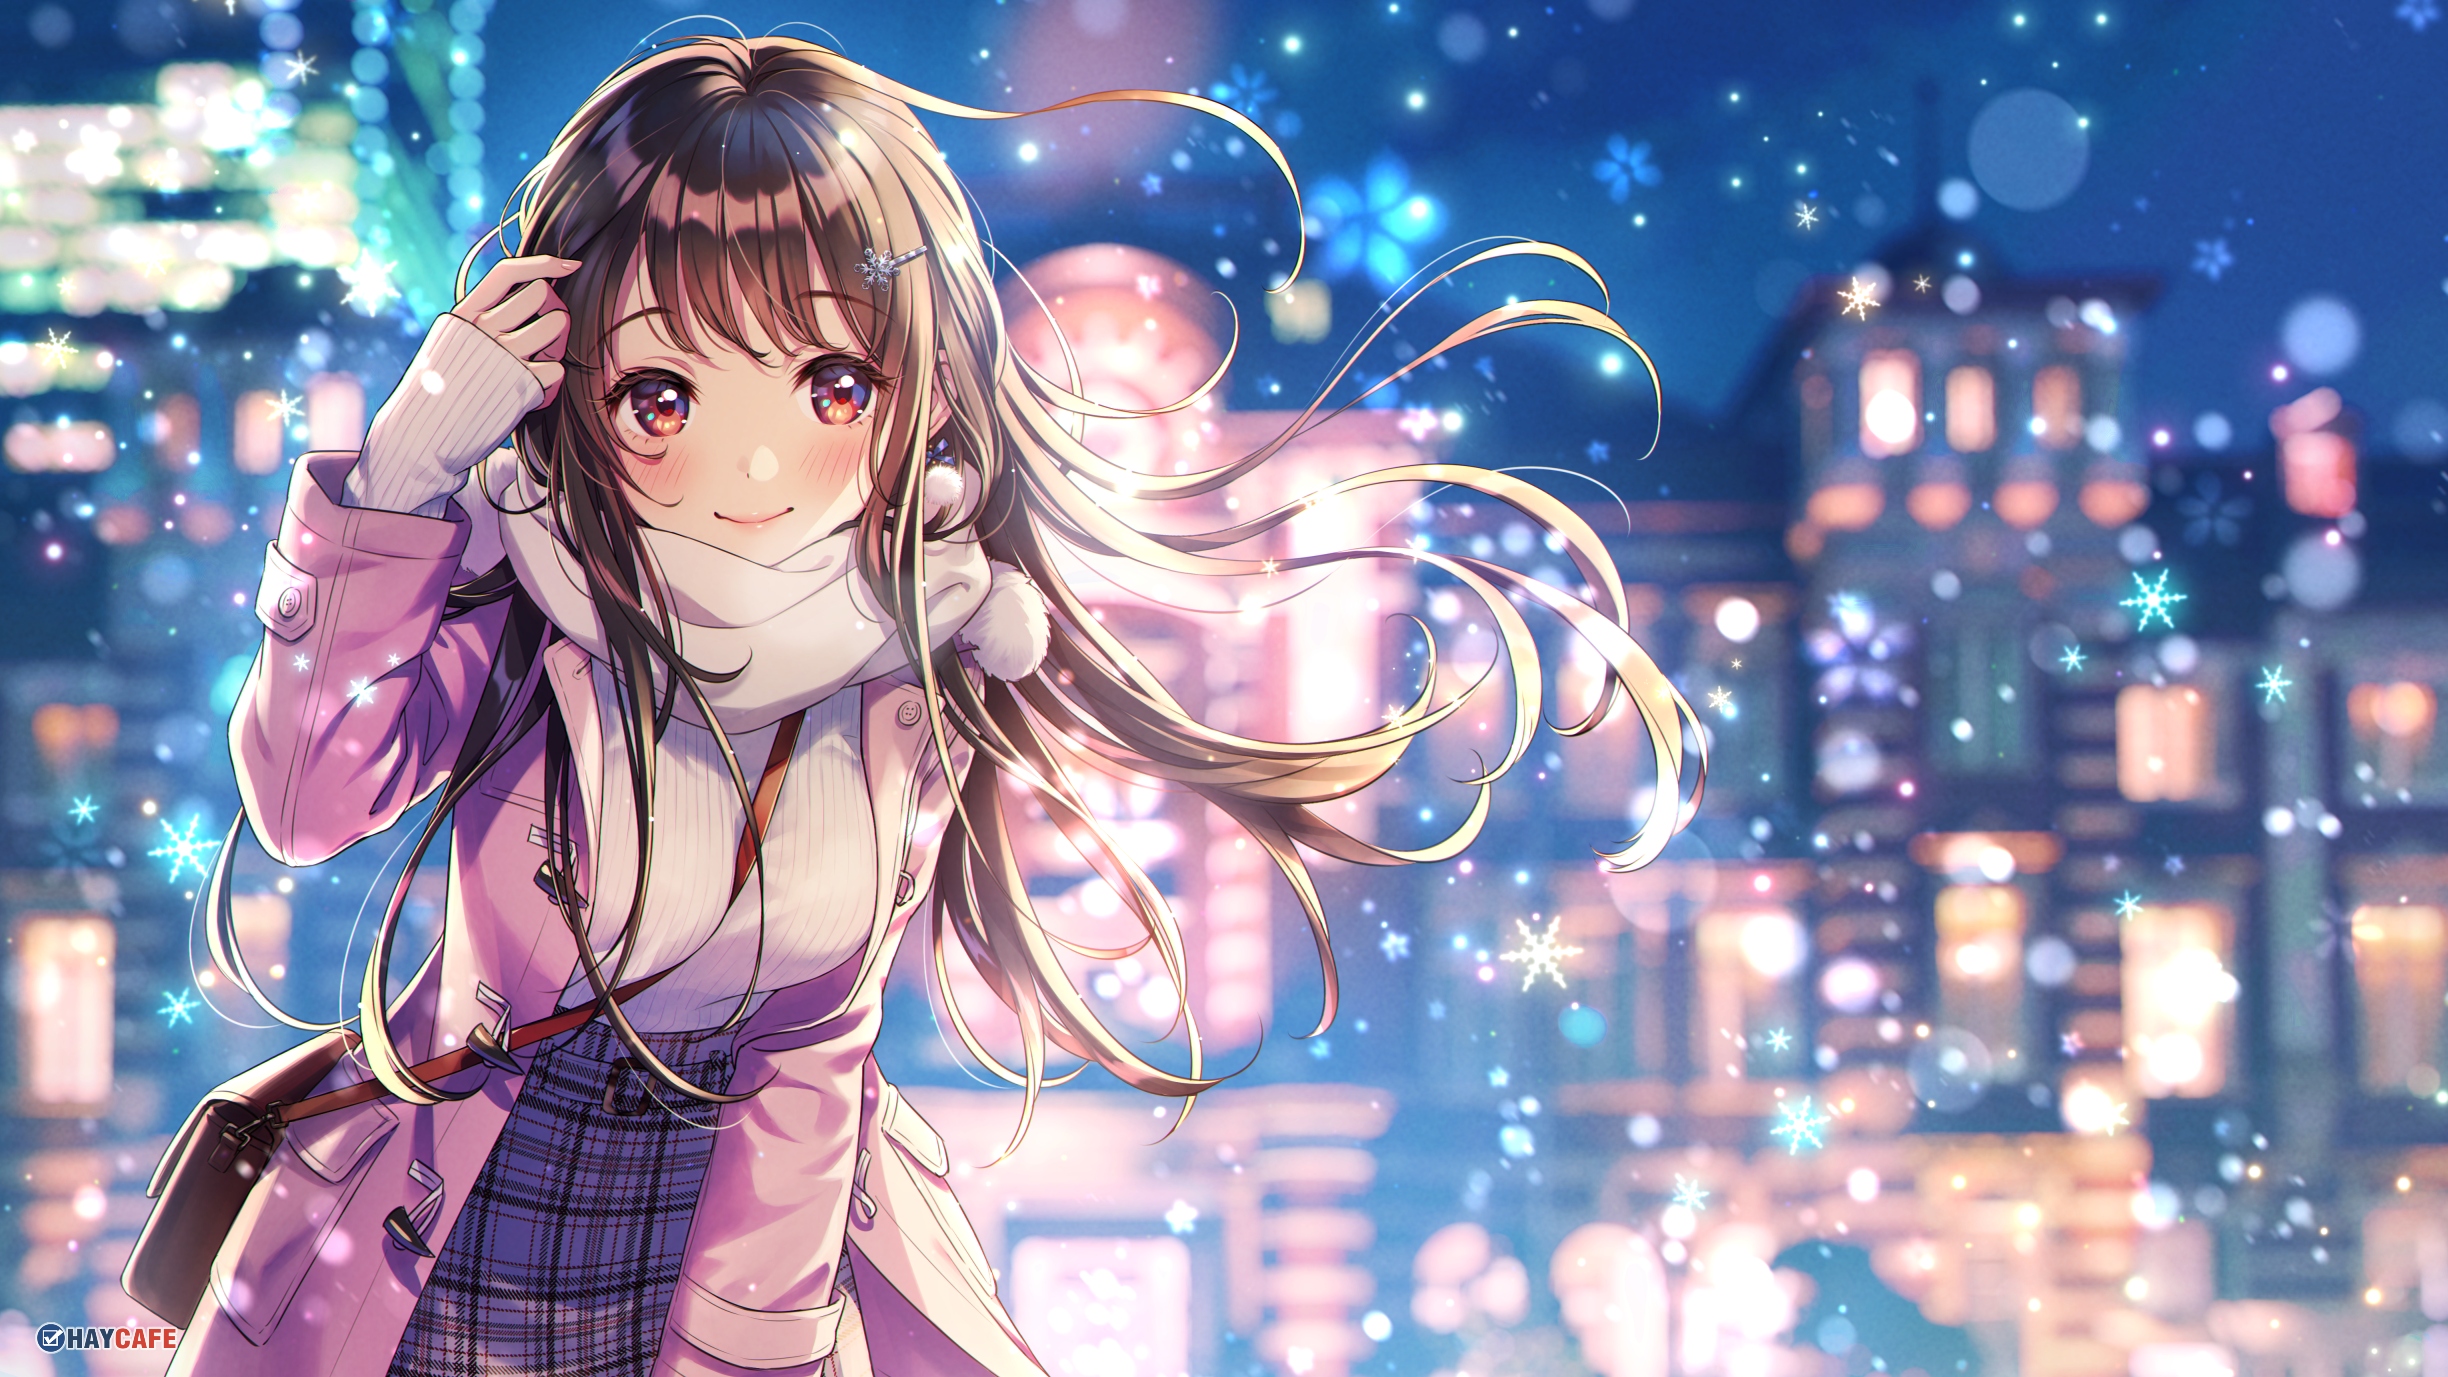 Hình ảnh anime mùa đông đẹp này là ​​một trong những bức tranh đẹp nhất mà bạn từng thấy. Nhân vật nữ chính được vẽ với tinh tế và bóng tối đầy cảm hứng, nhưng vẫn giữ được vẻ đẹp quyến rũ. Nó là một hình ảnh không thể bỏ qua cho những người yêu thích anime và mùa đông.